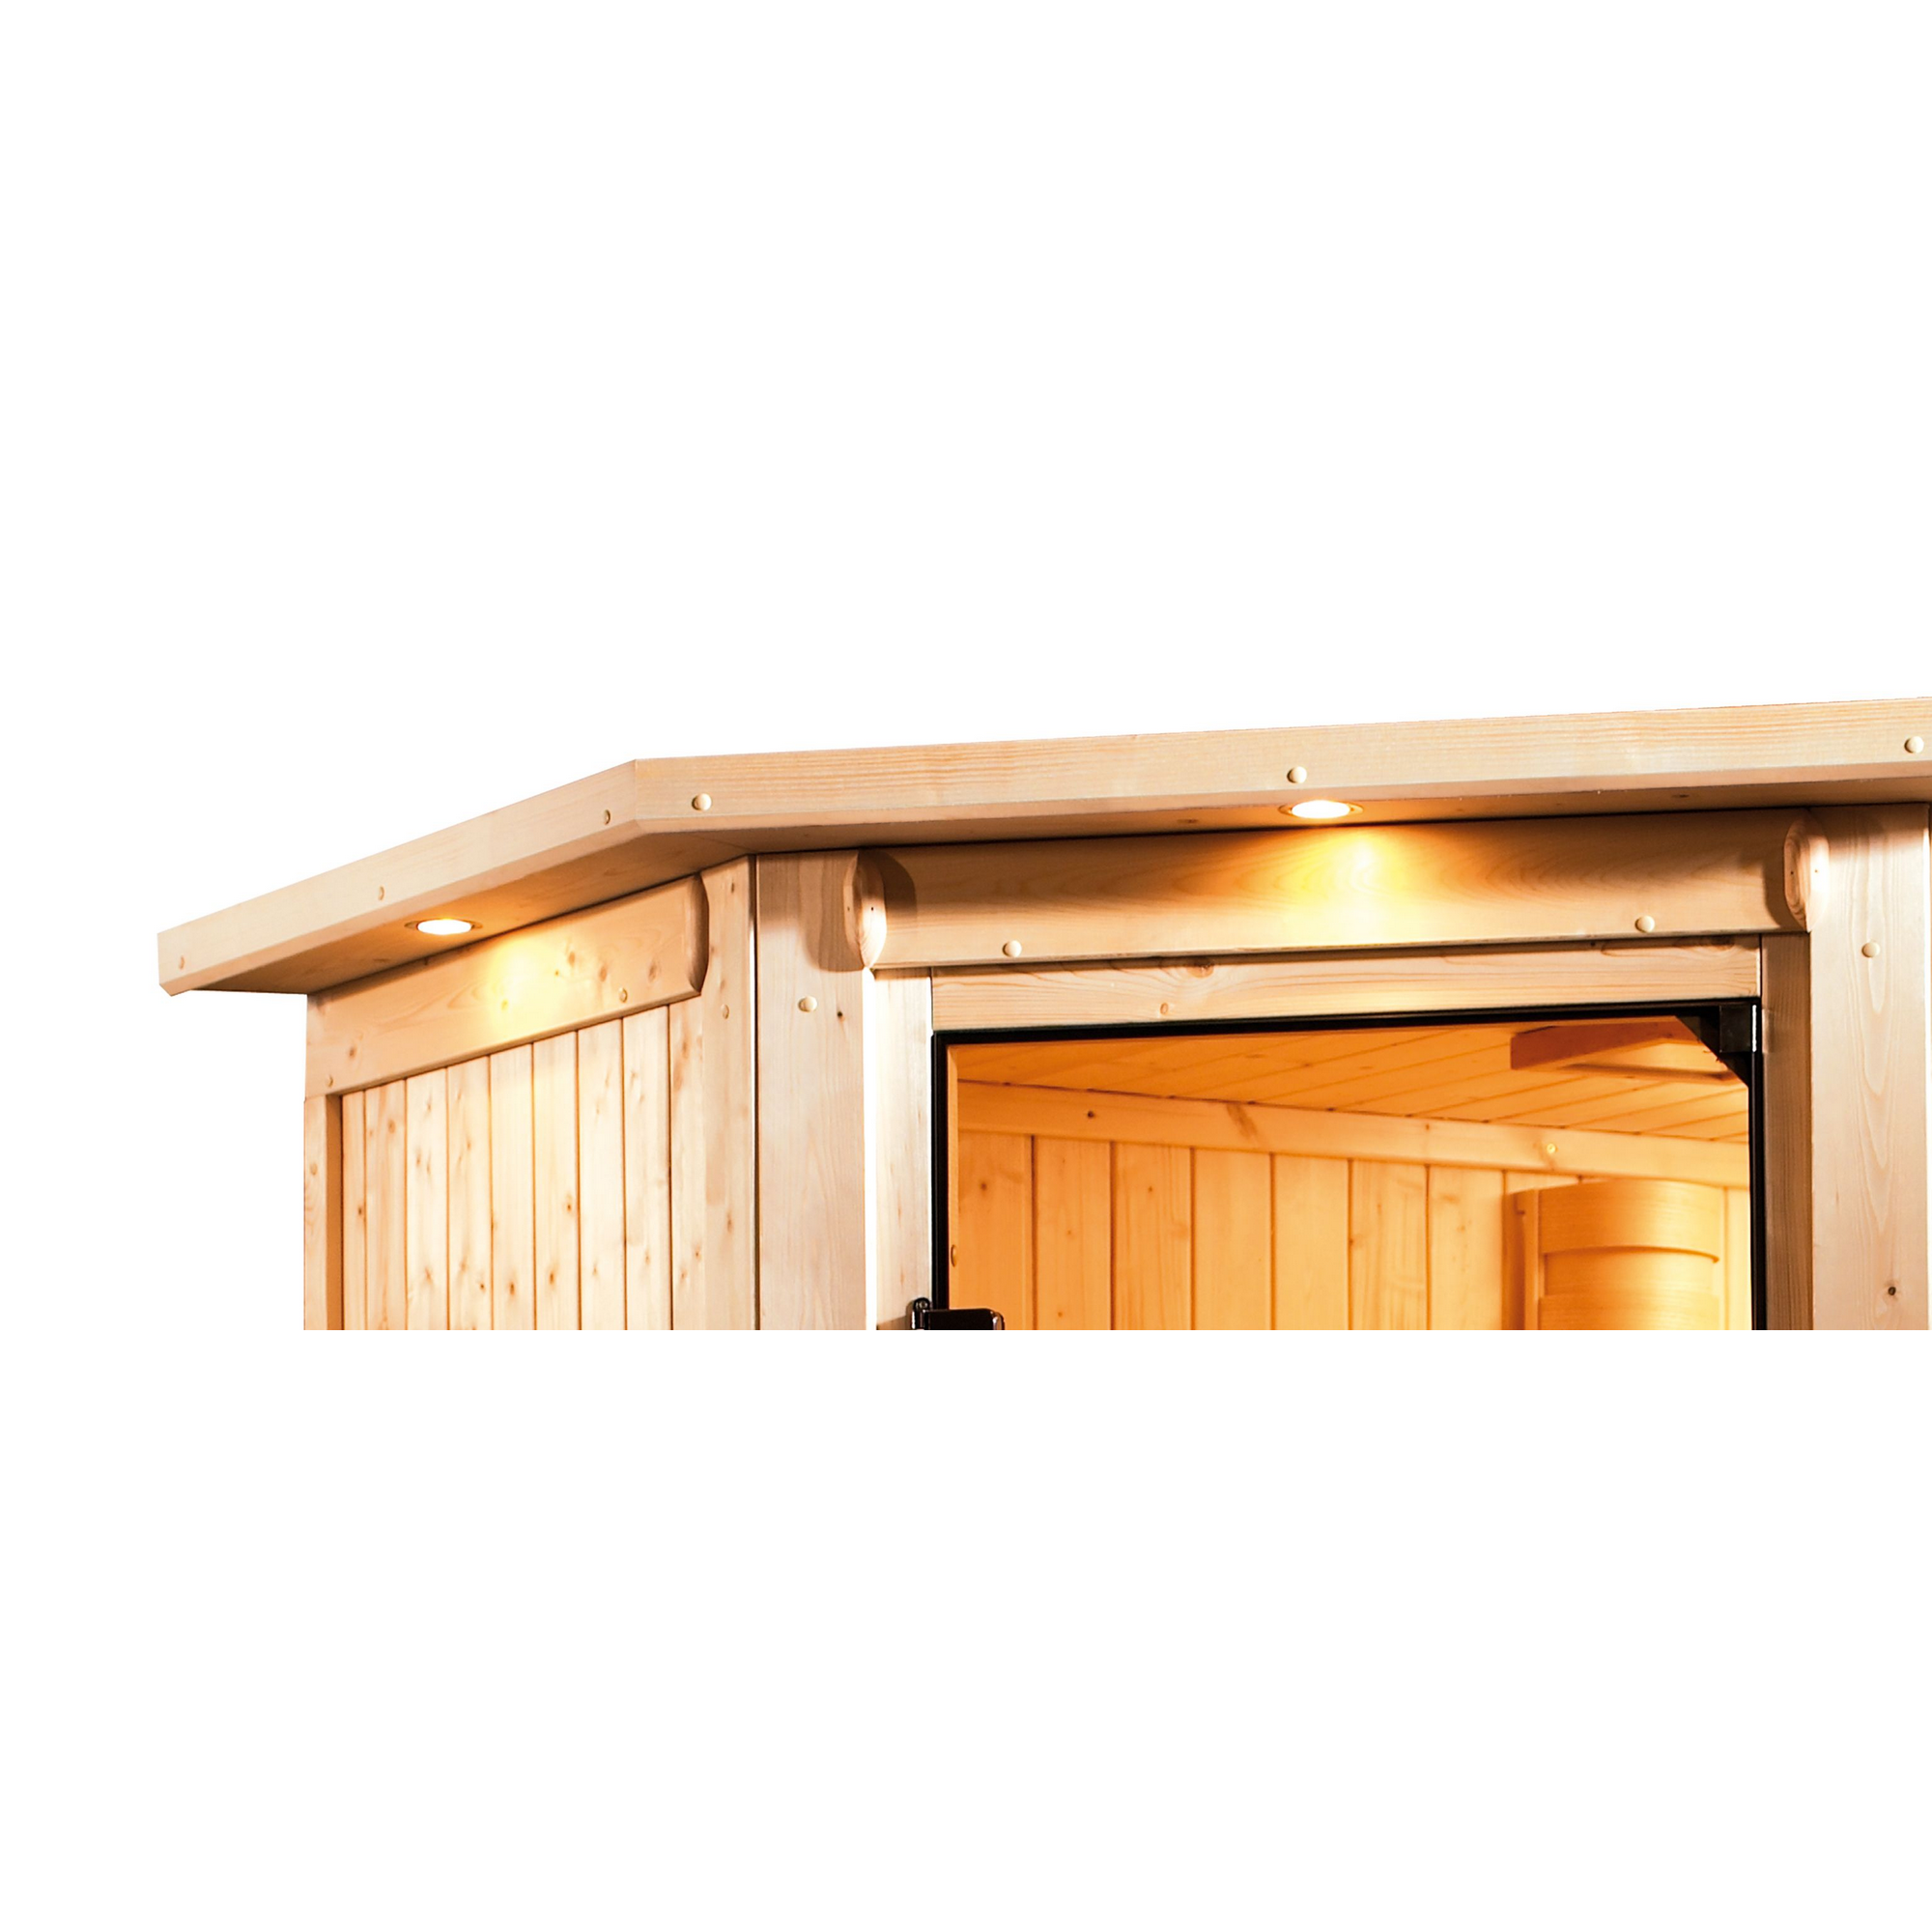 Sauna 'Aurelia 2' naturbelassen mit Kranz und bronzierter Tür 9 kW Ofen externe Steuerung 245 x 245 x 202 cm + product picture